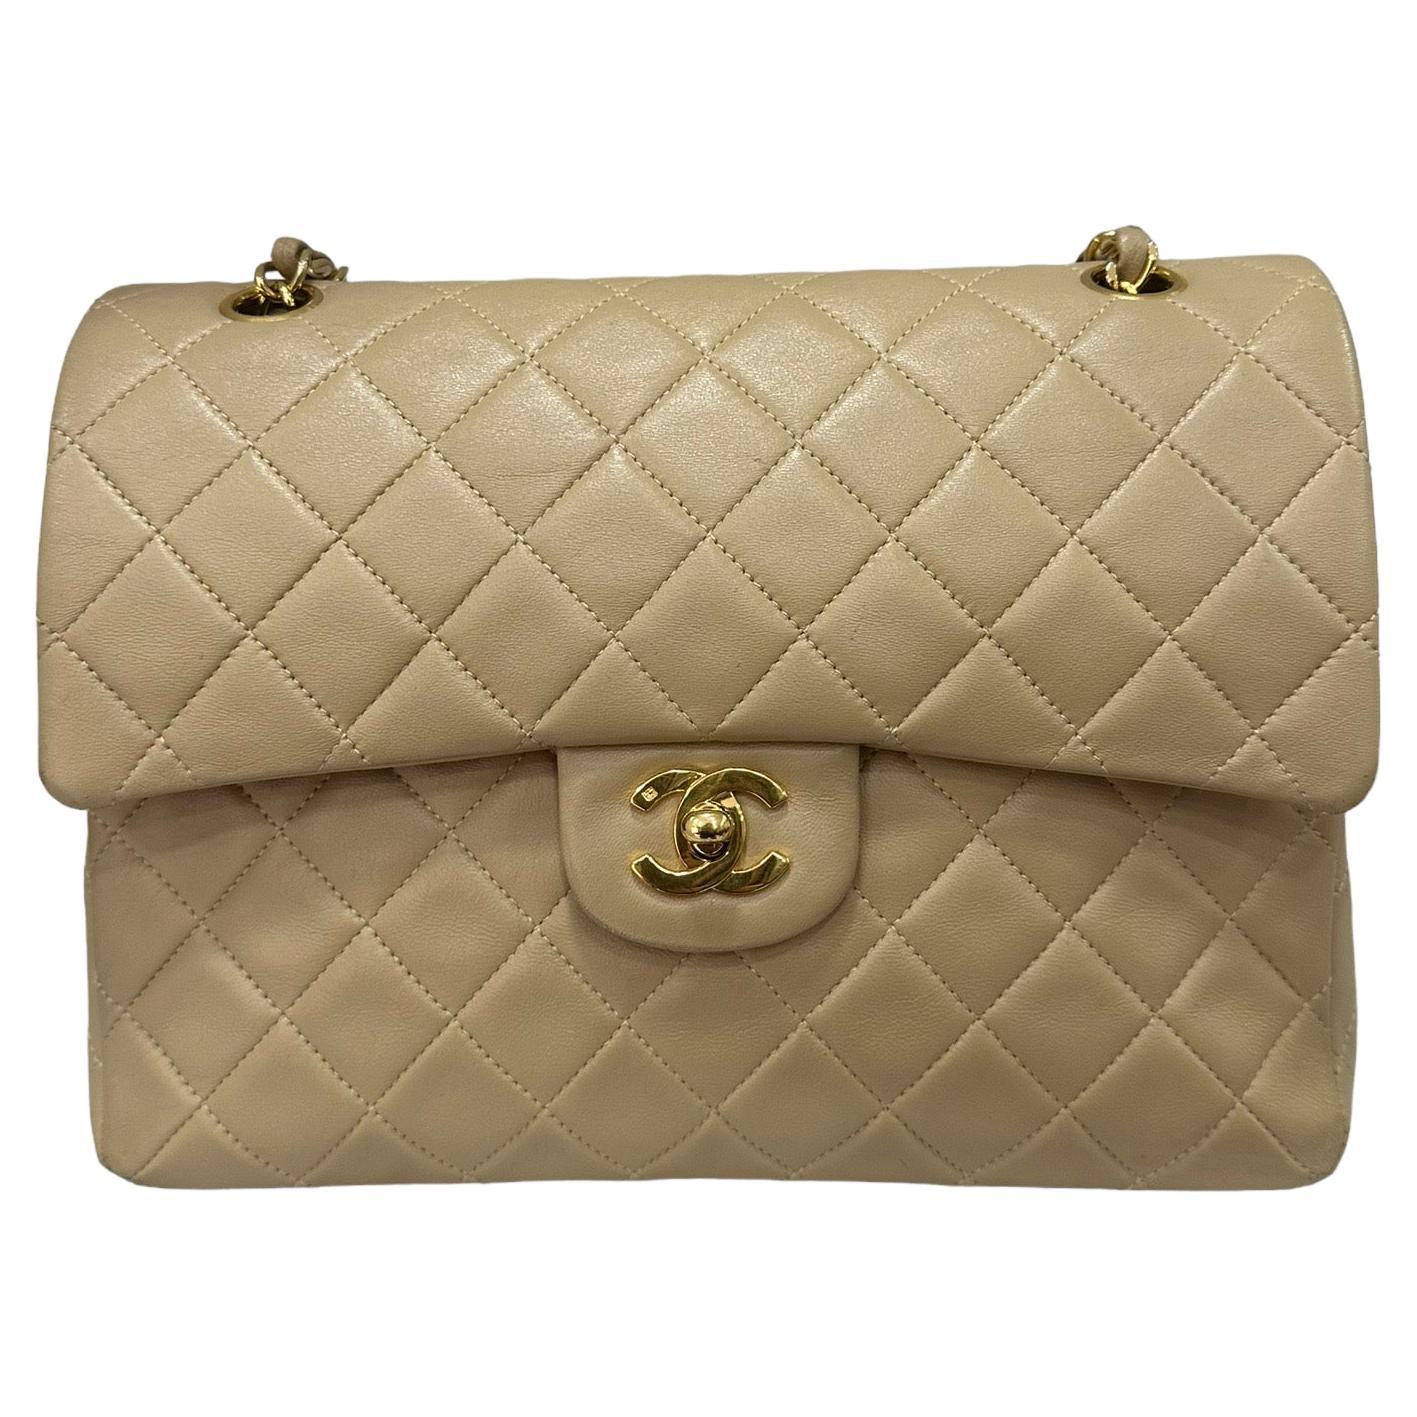 ‘90 Chanel Flap Vintage Beige Leather Shoulder Bag For Sale